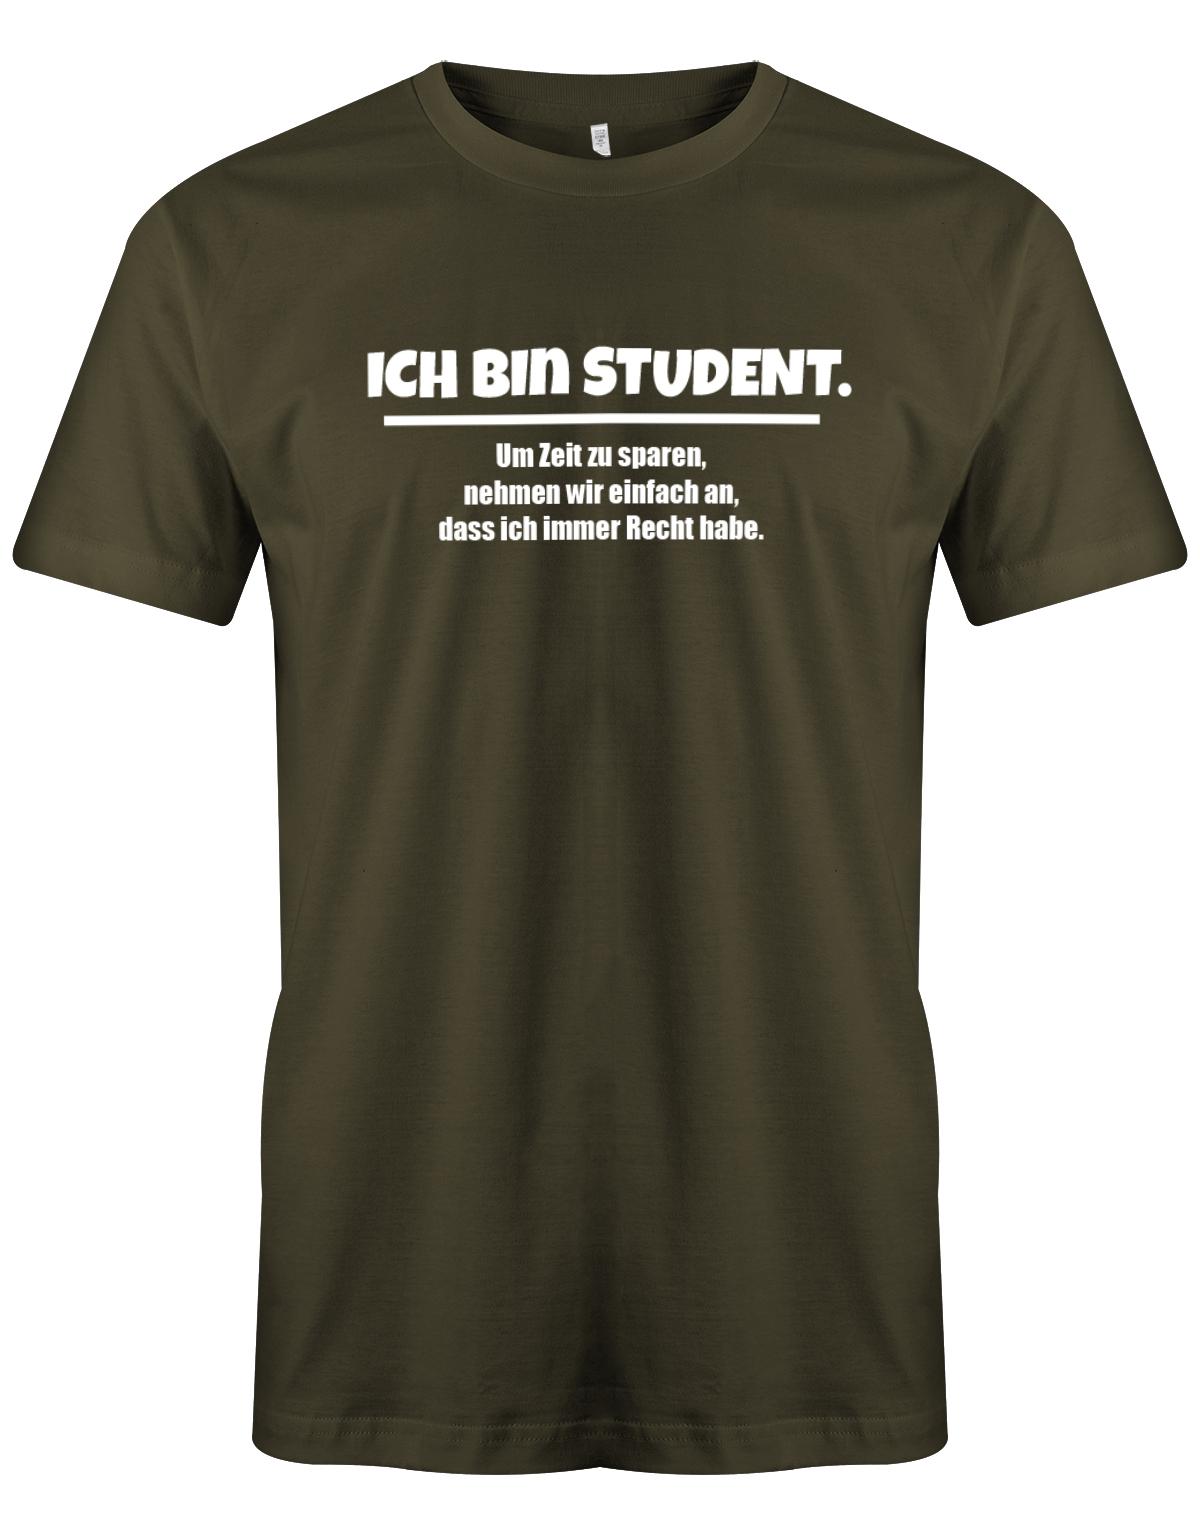 Ich-bin-Student-um-zeot-zu-sparen-habe-ich-recht-Herren-Spr-che-Studium-Shirt-Army